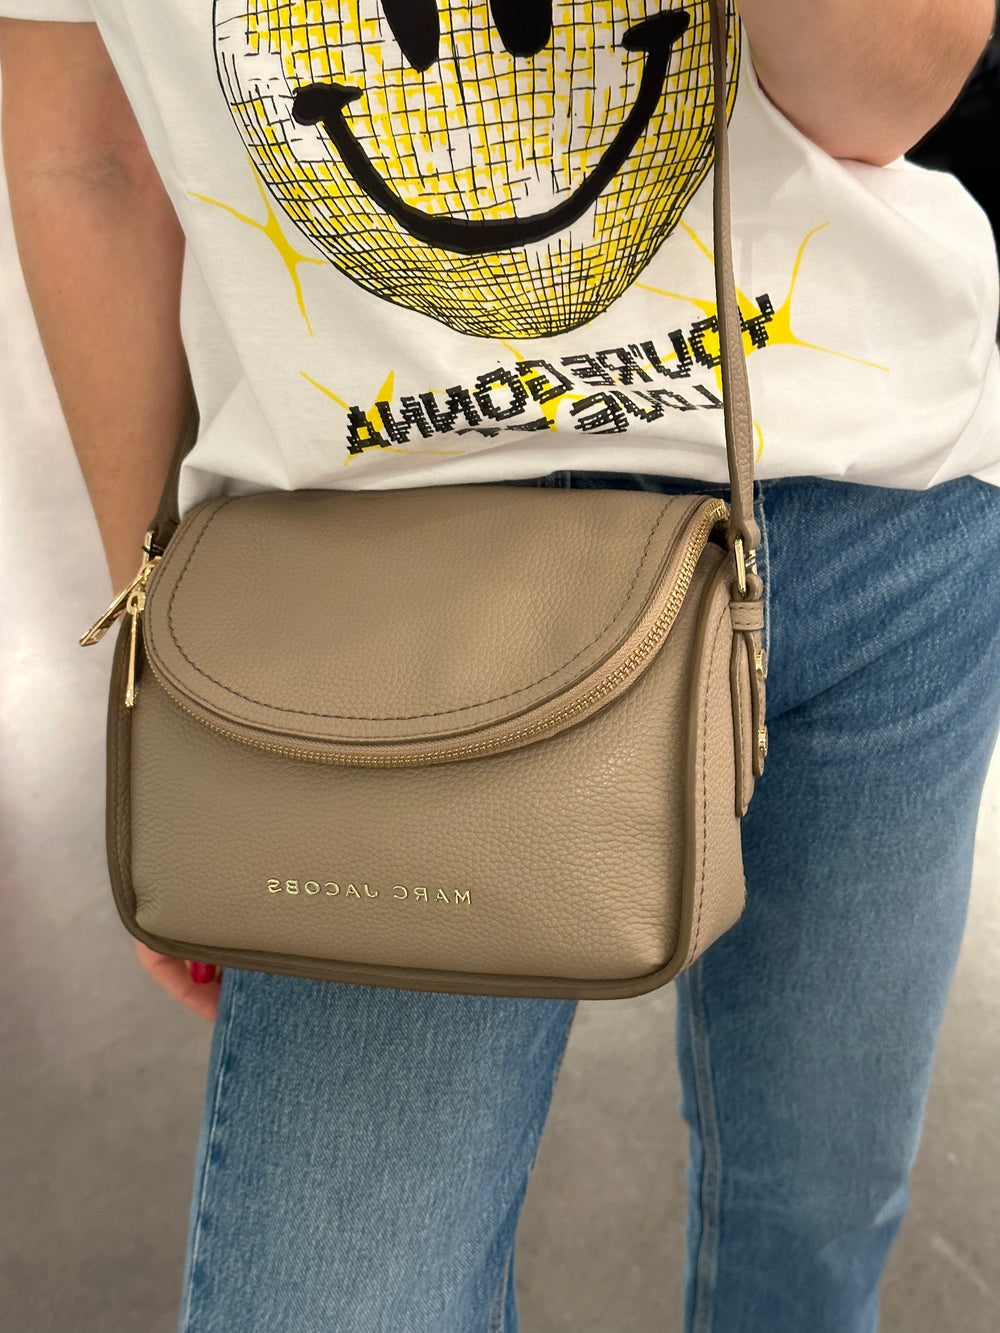 Marc Jacobs The Groove Hobo Shoulder Bag